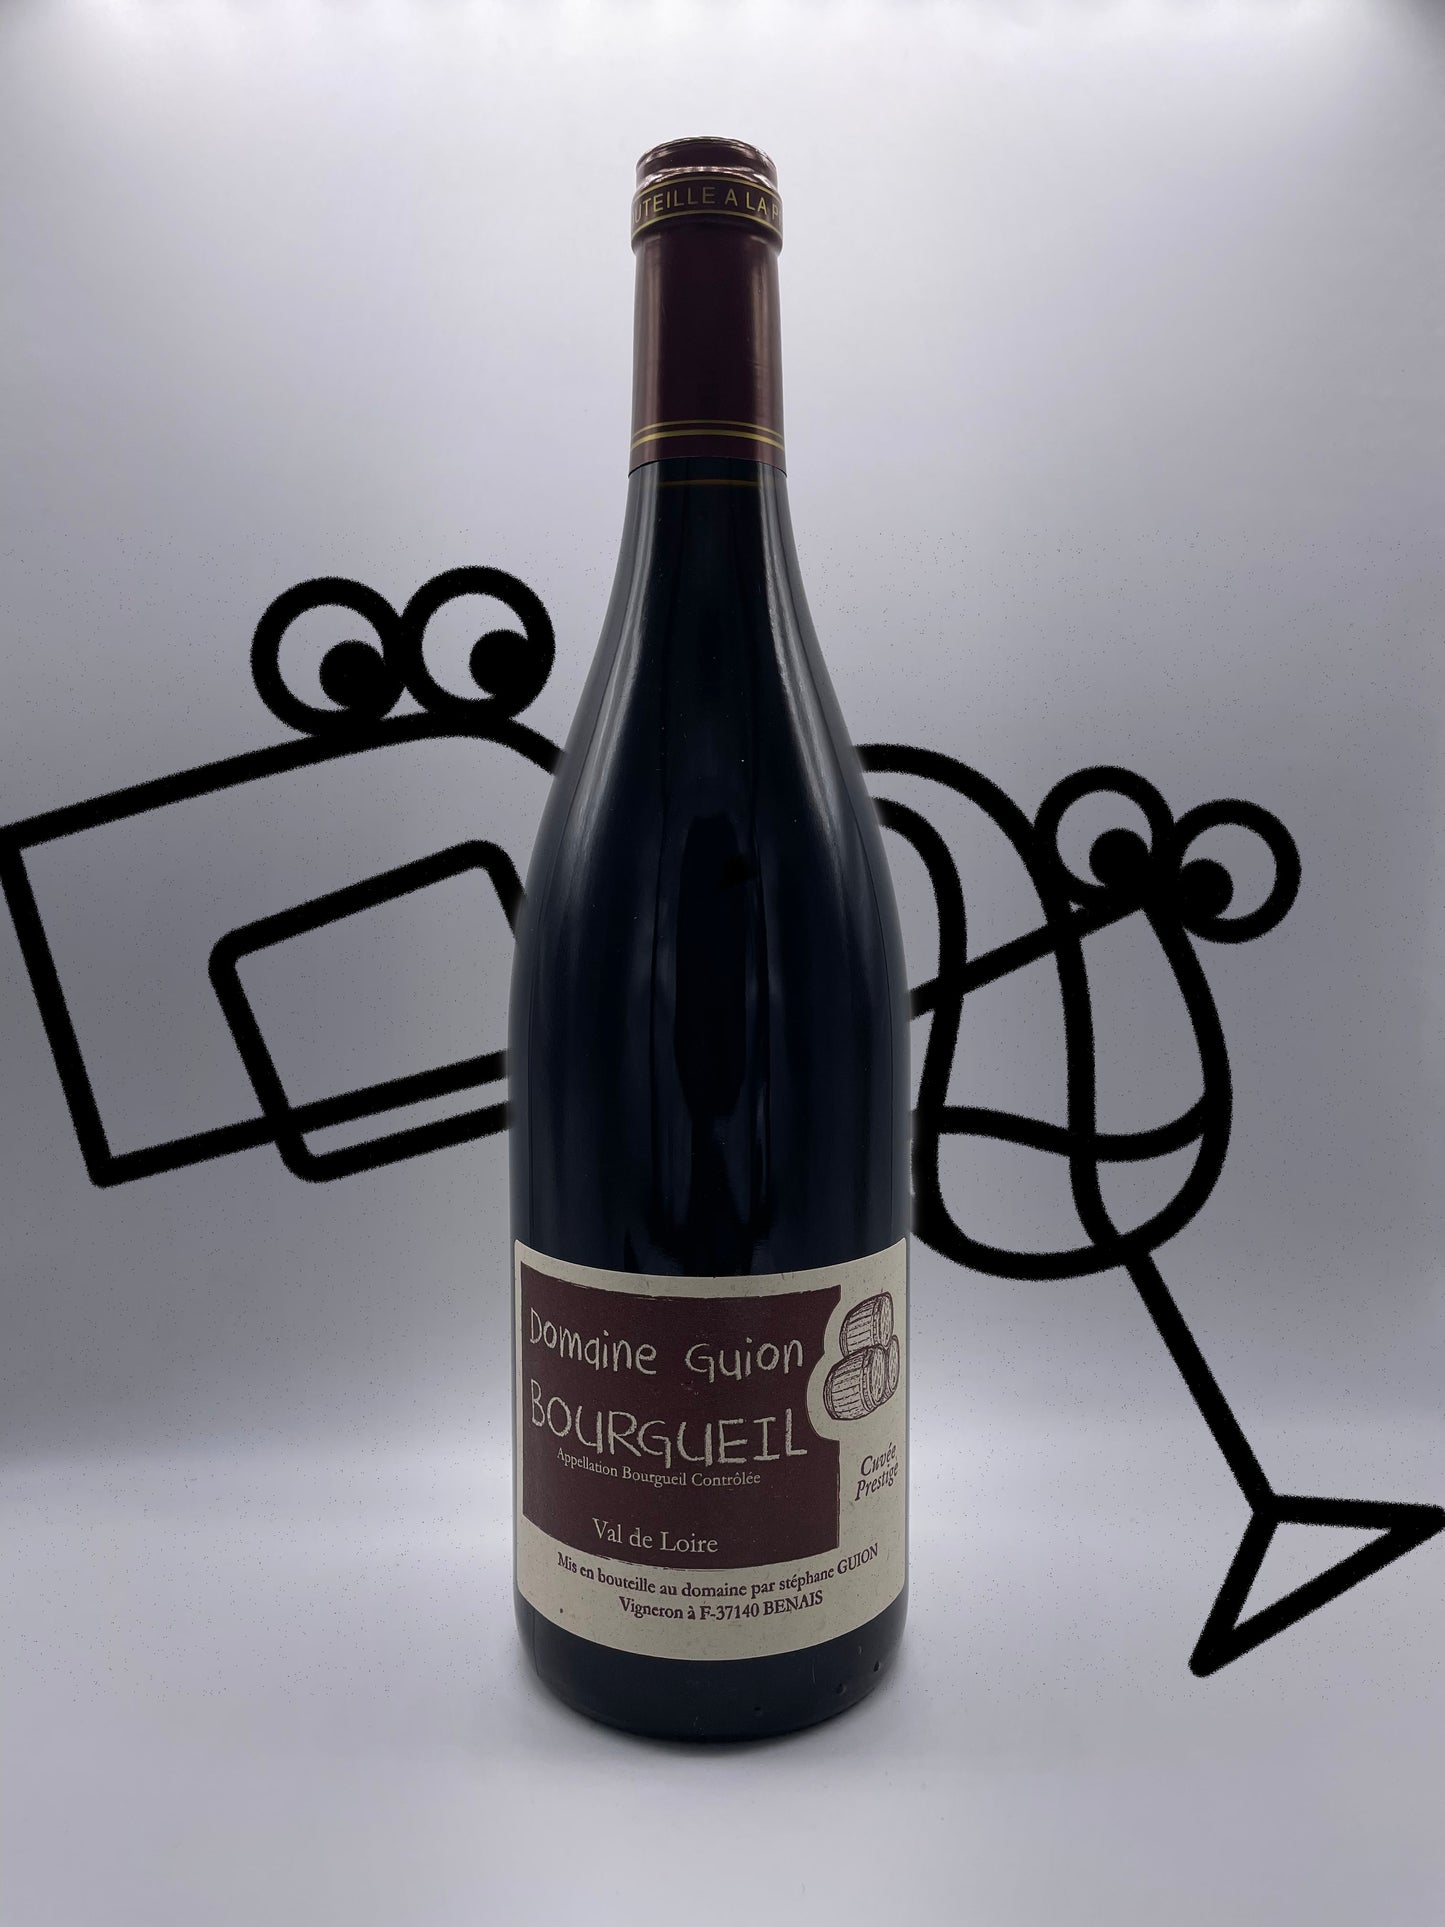 Domaine Guion Bourgueil 'Cuvee Prestige' 2017 Loire Valley, France Williston Park Wines